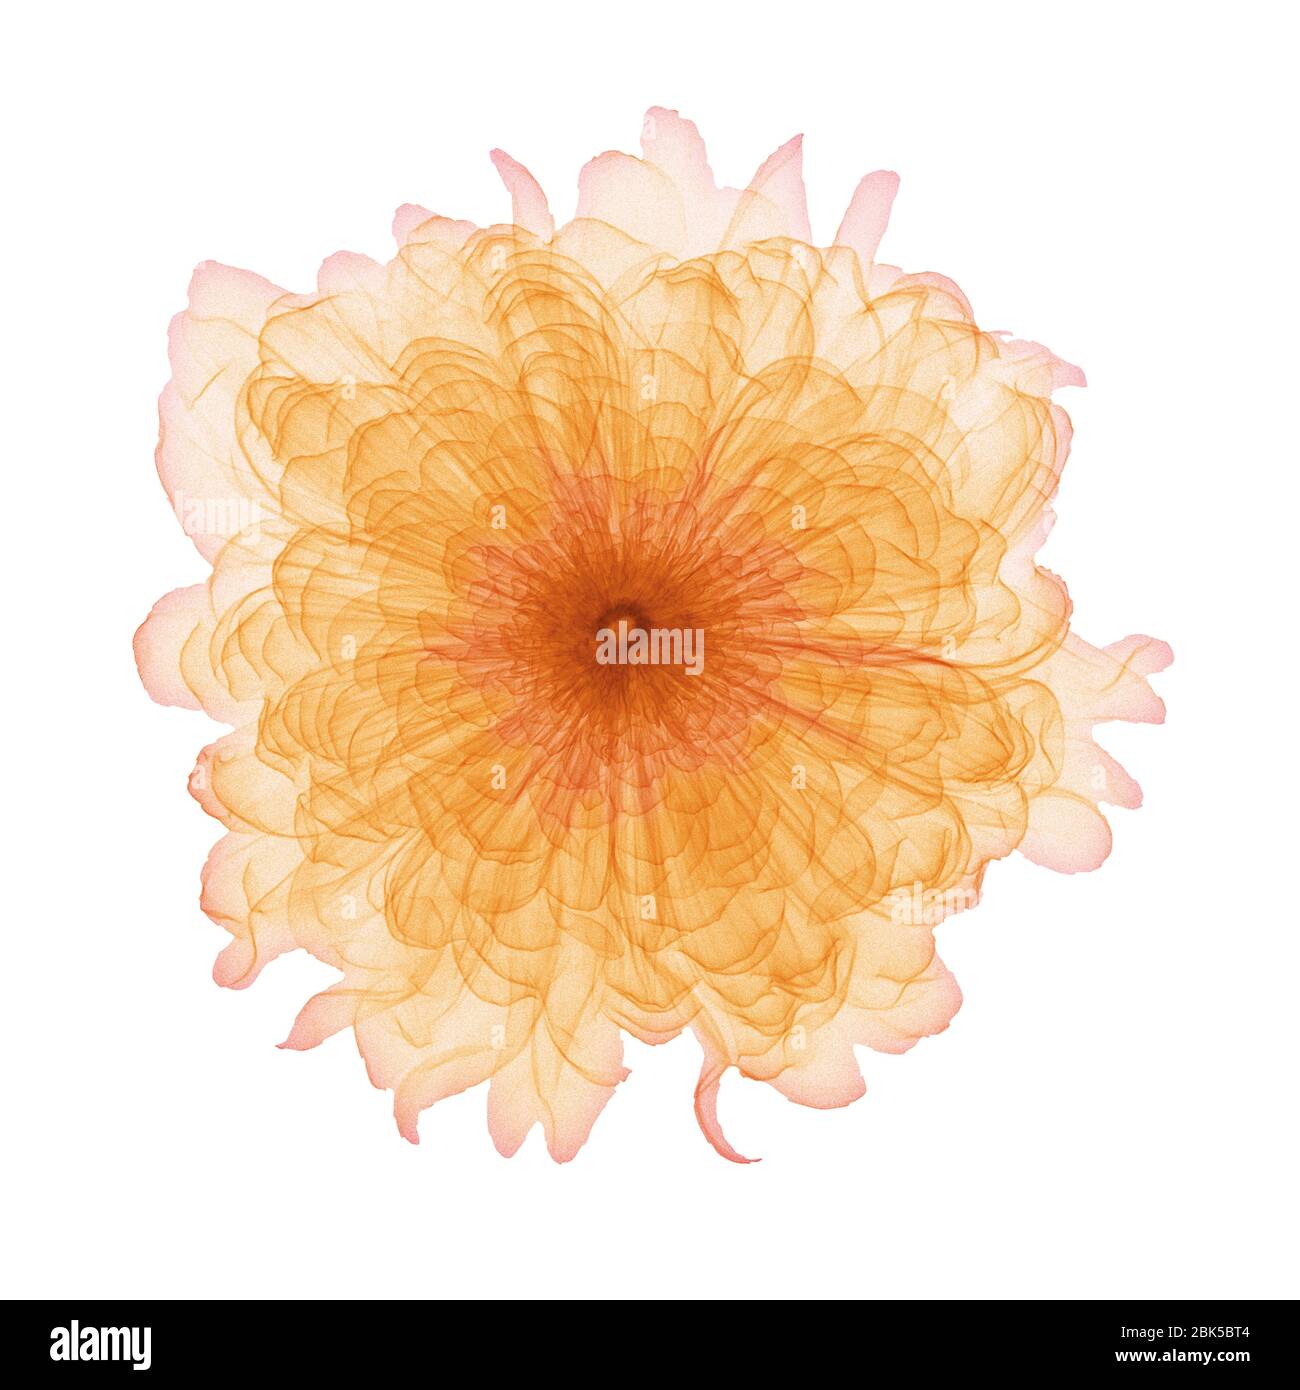 Ringelblume (Tagetes sp.) Blütenkopf, farbiger Röntgenstrahl. Stockfoto